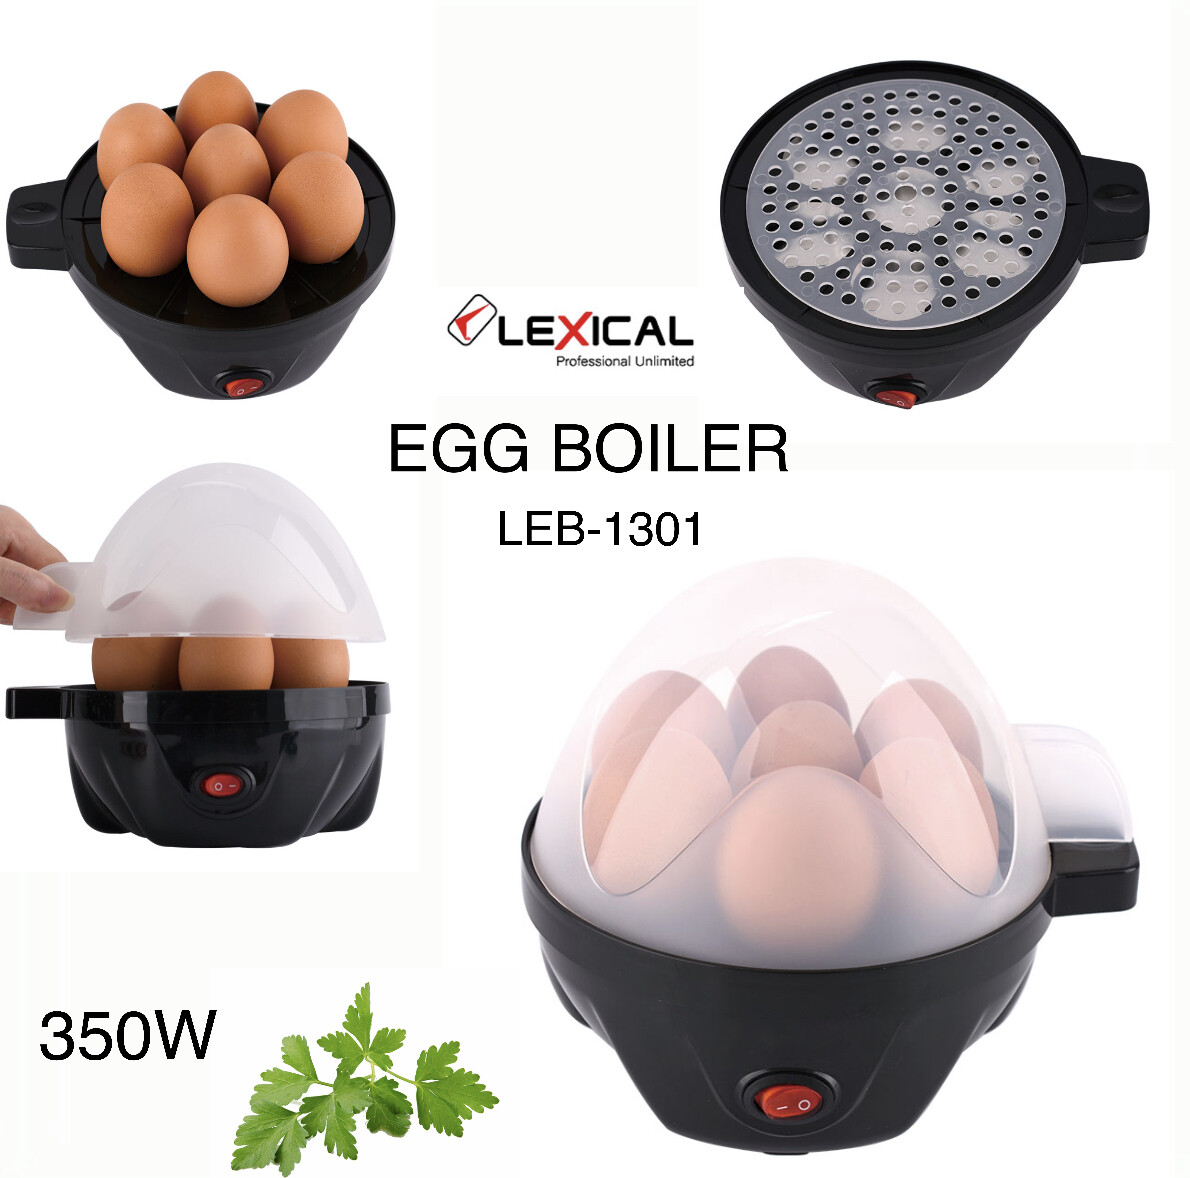 Egg Boiler (LEB-1301)